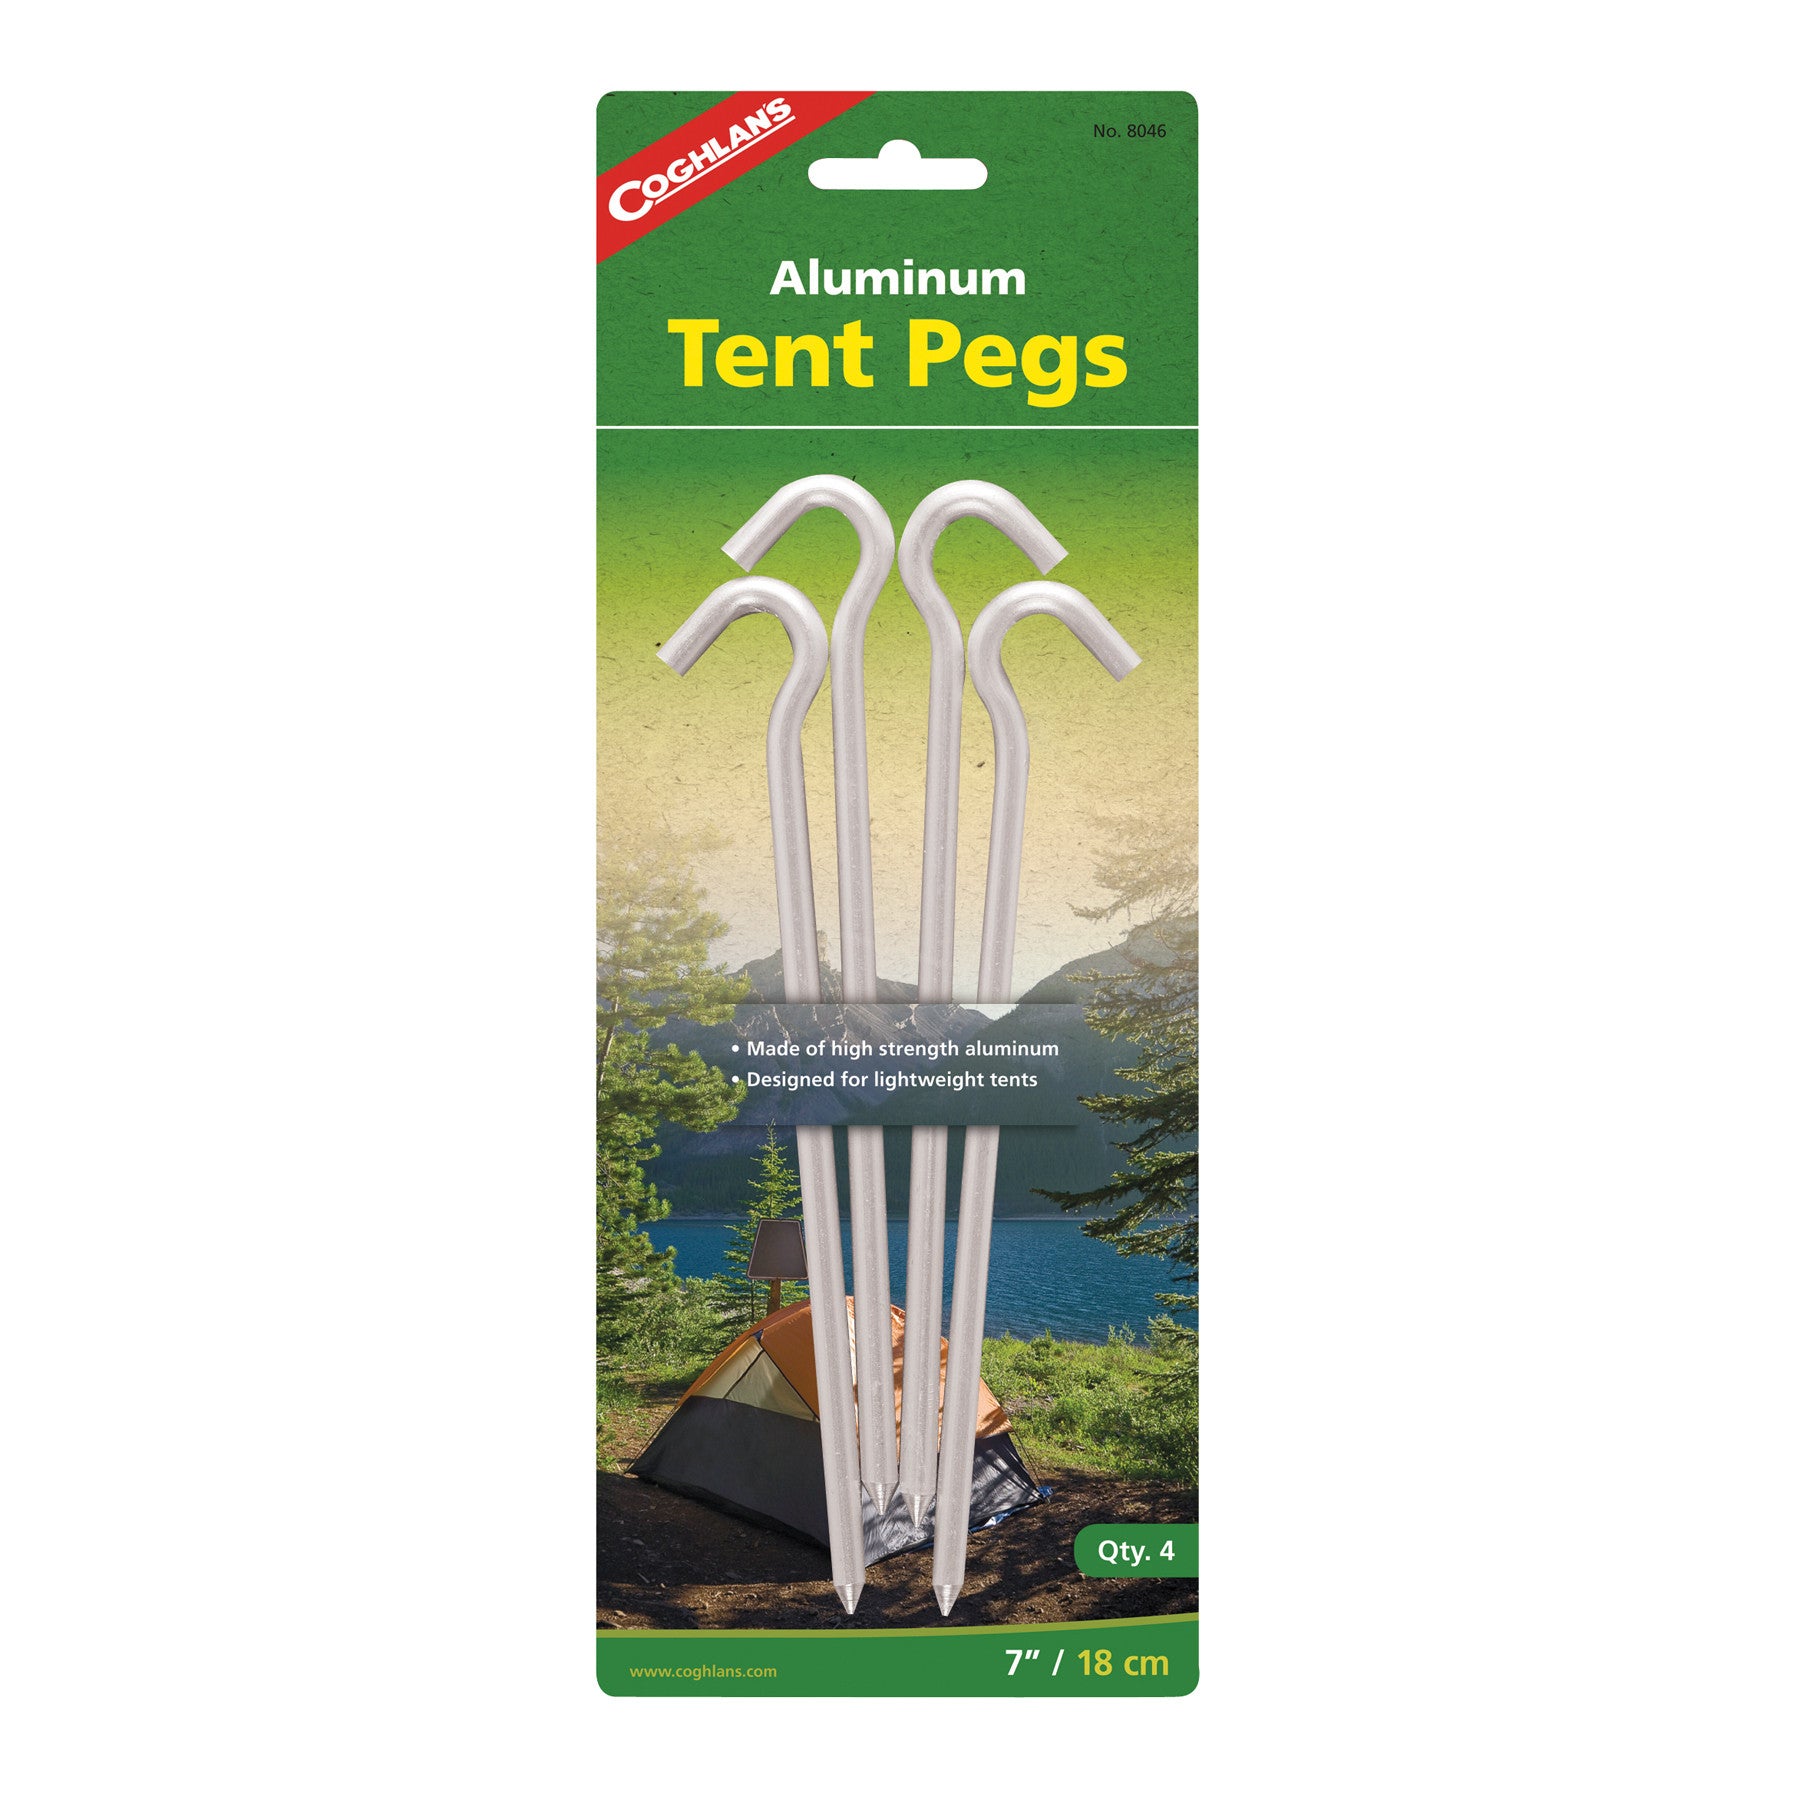 Coghlan's Aluminum Tent Pegs - 4 pack